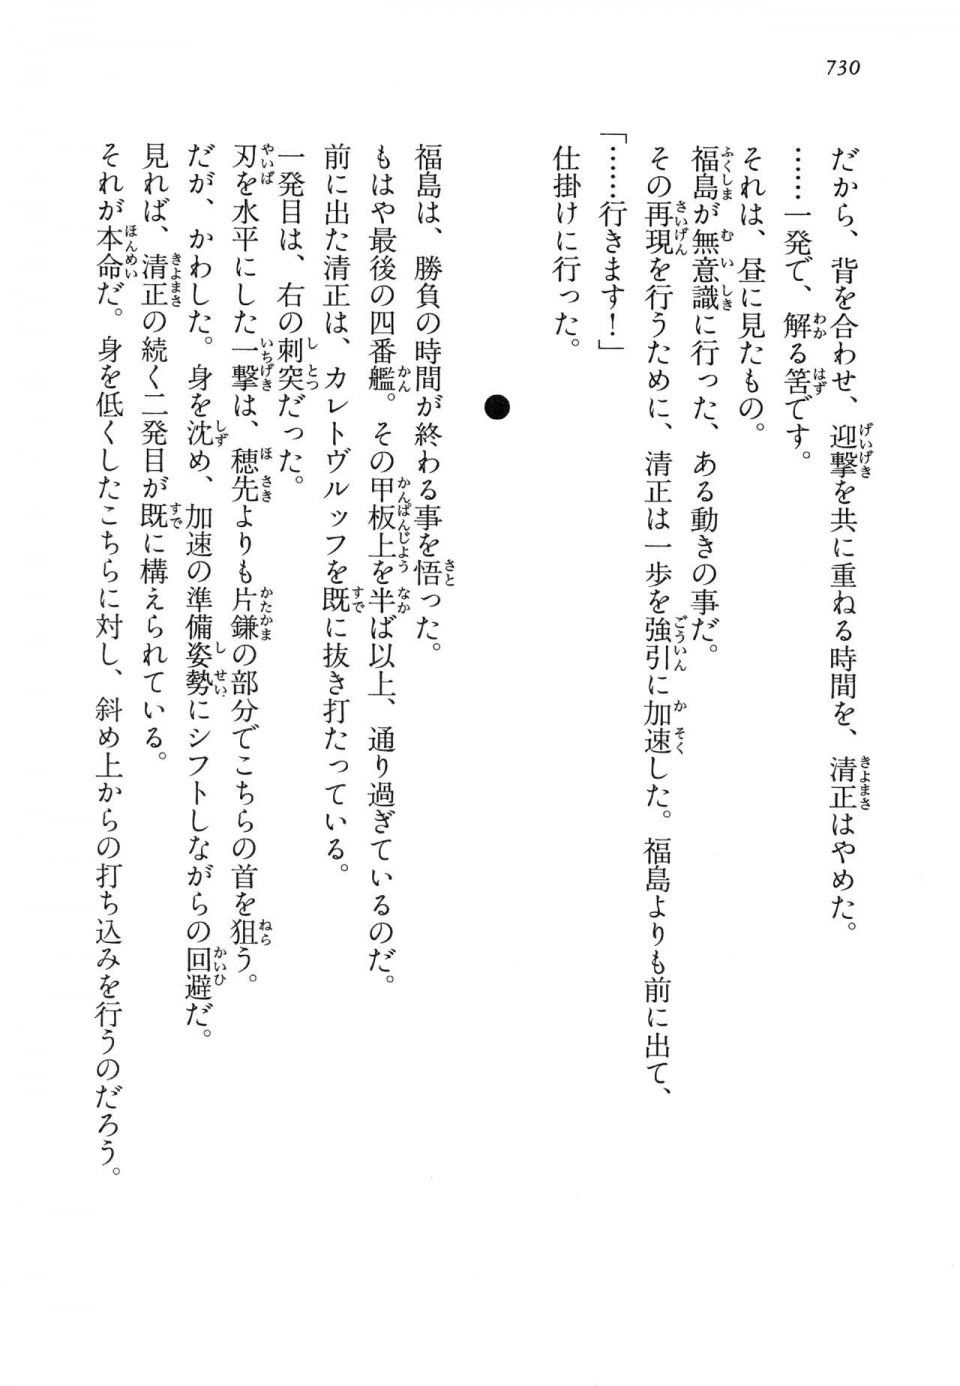 Kyoukai Senjou no Horizon LN Vol 14(6B) - Photo #730